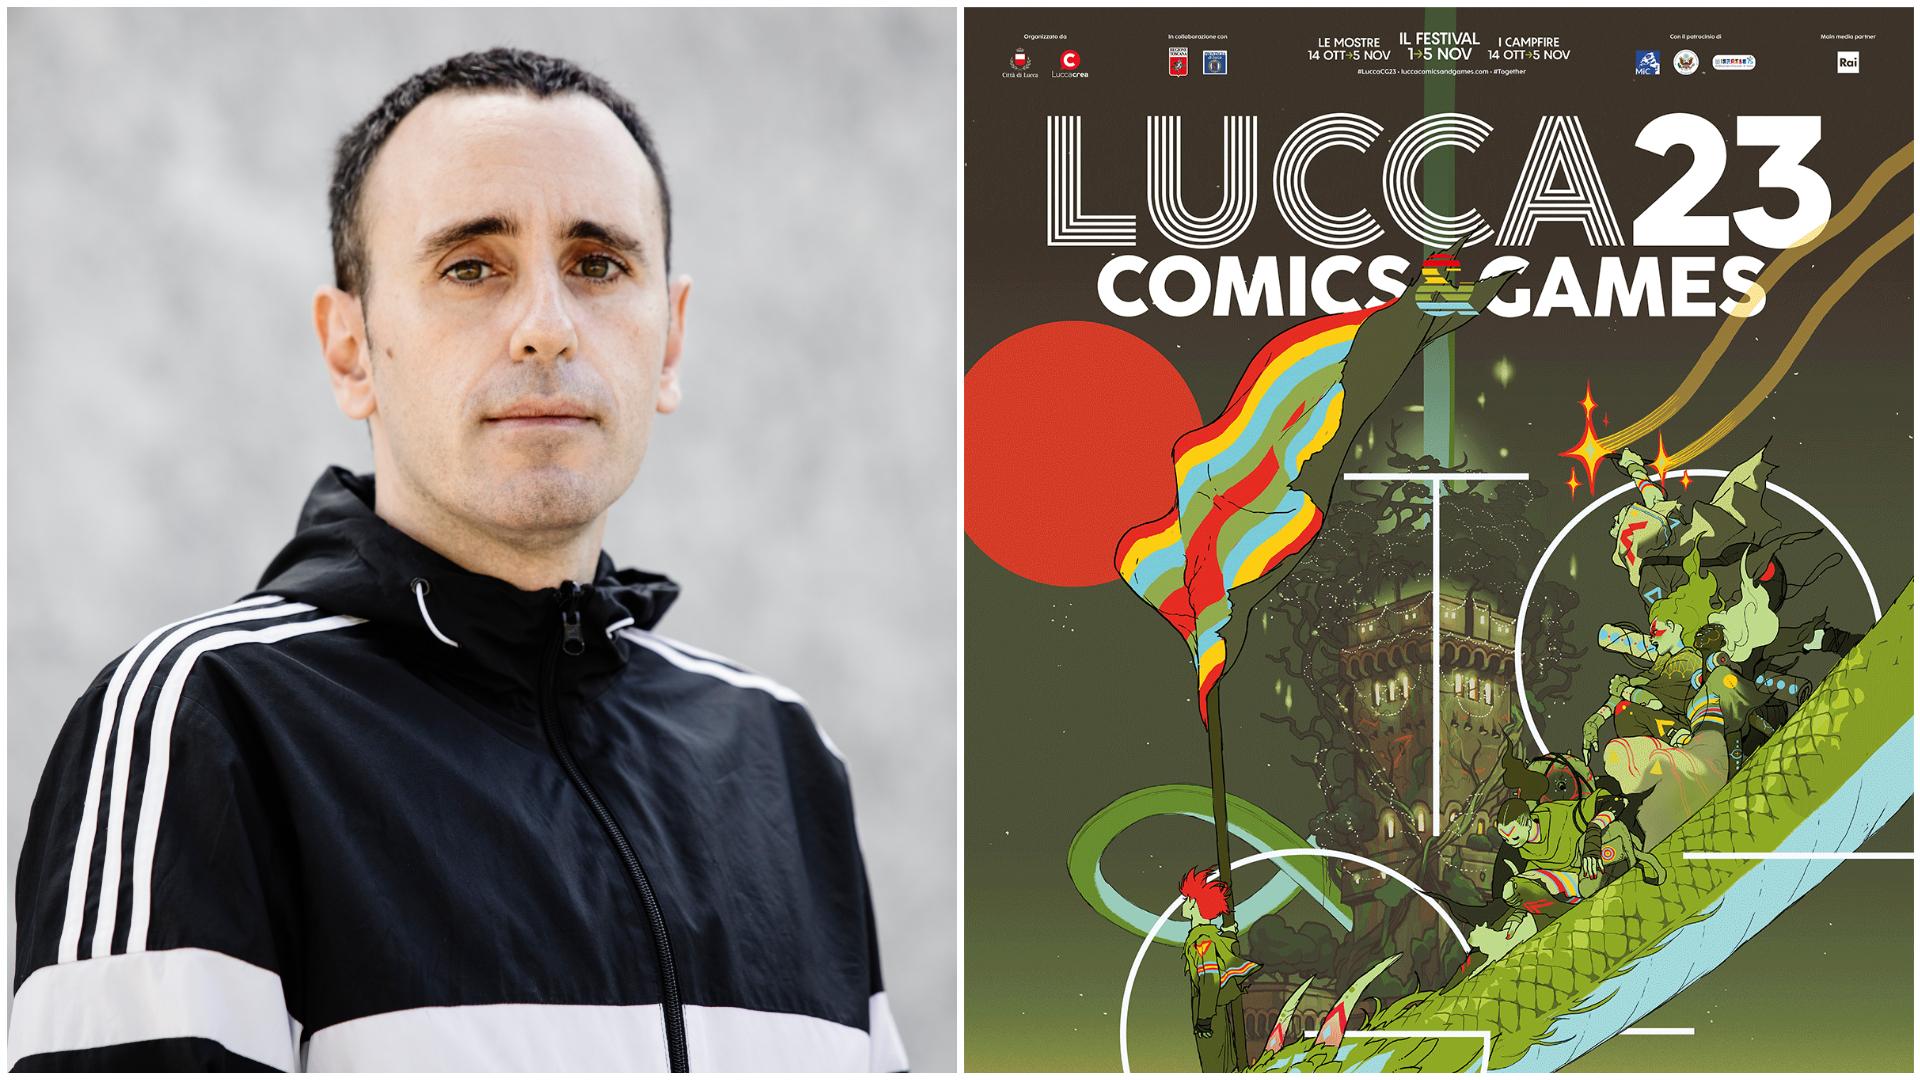 Altri artisti di fama non parteciperanno al Lucca Comics dopo Zerocalcare.